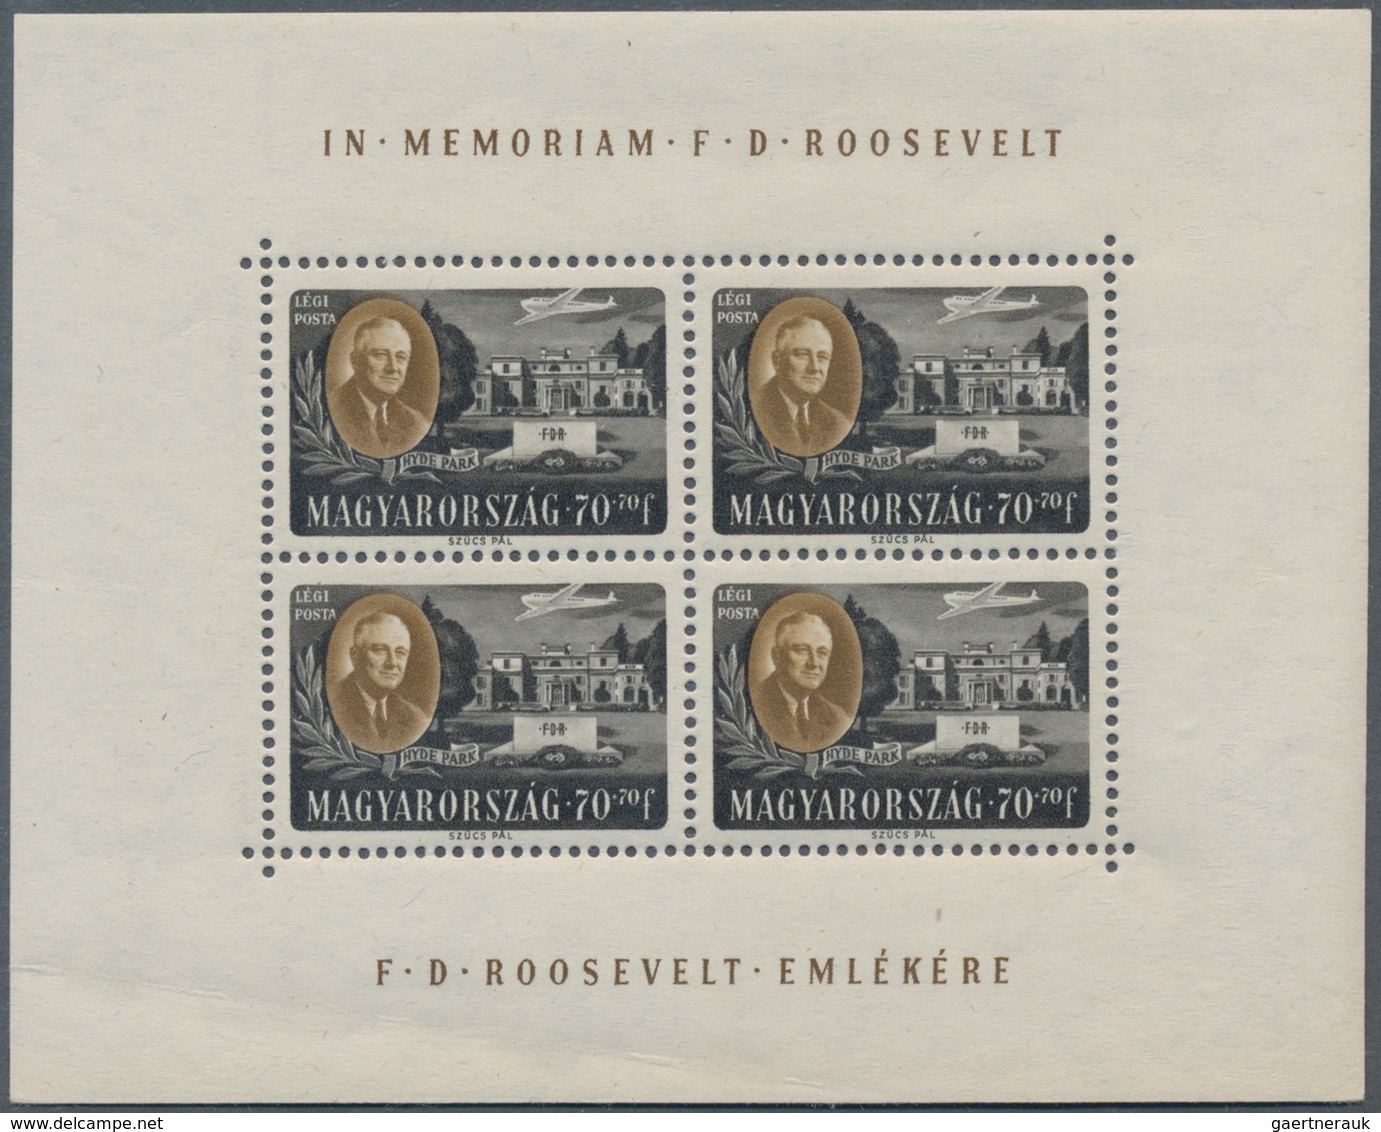 Ungarn: 1947, postfrische Kleinbogen "Präsident Roosevelt" gezähnt, 1x mit Randbugspur, (Mi.-E 450.-